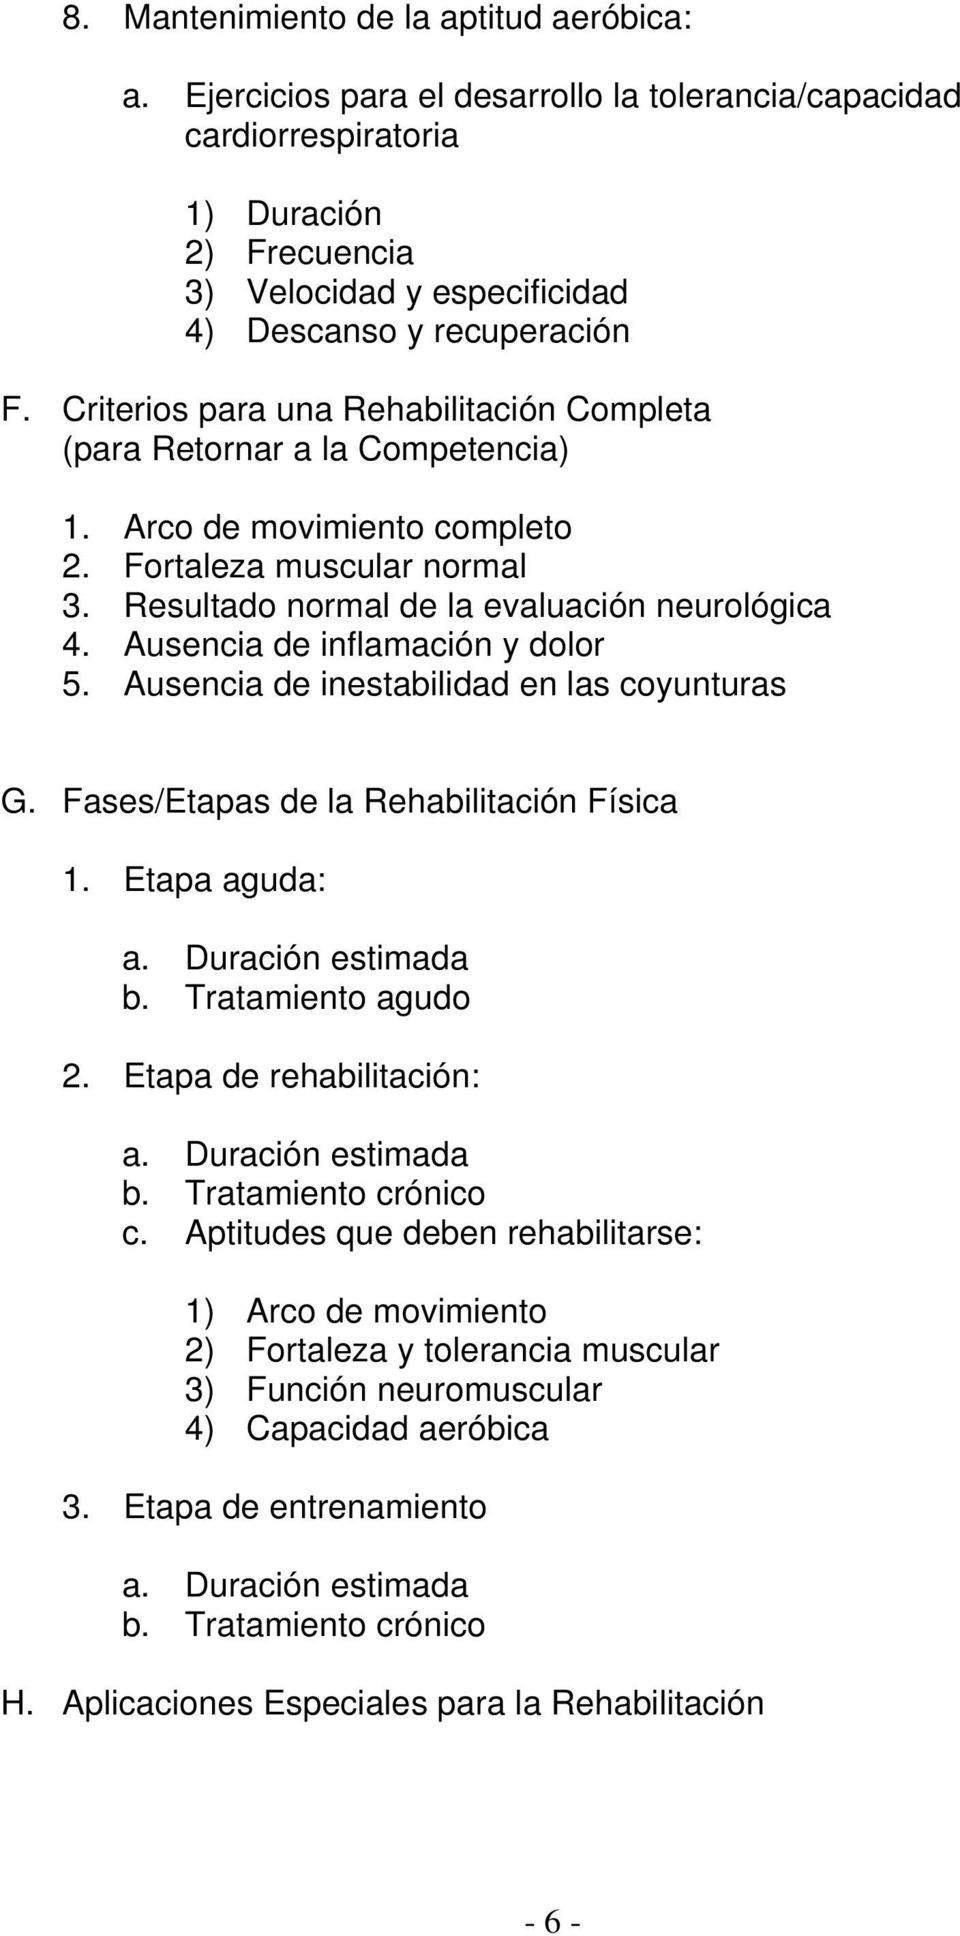 Criterios para una Rehabilitación Completa (para Retornar a la Competencia) 1. Arco de movimiento completo 2. Fortaleza muscular normal 3. Resultado normal de la evaluación neurológica 4.